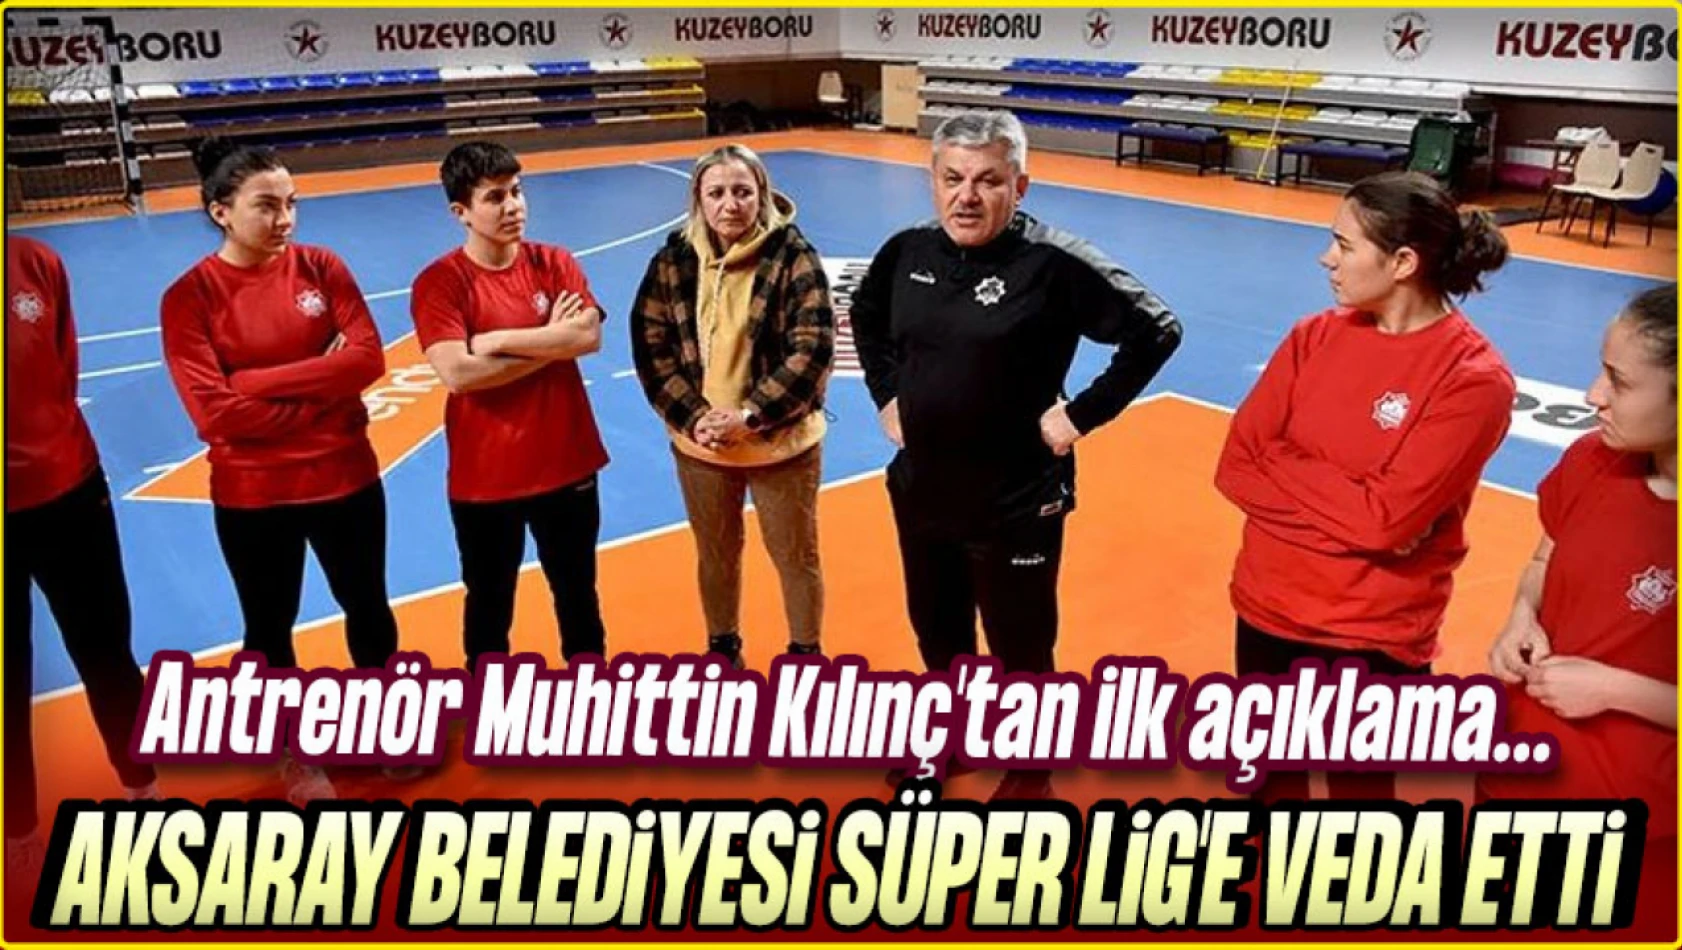 Aksaray Belediyesi Süper Lig'e Veda Etti: Antrenör Muhittin Kılınç'tan İlk Açıklama